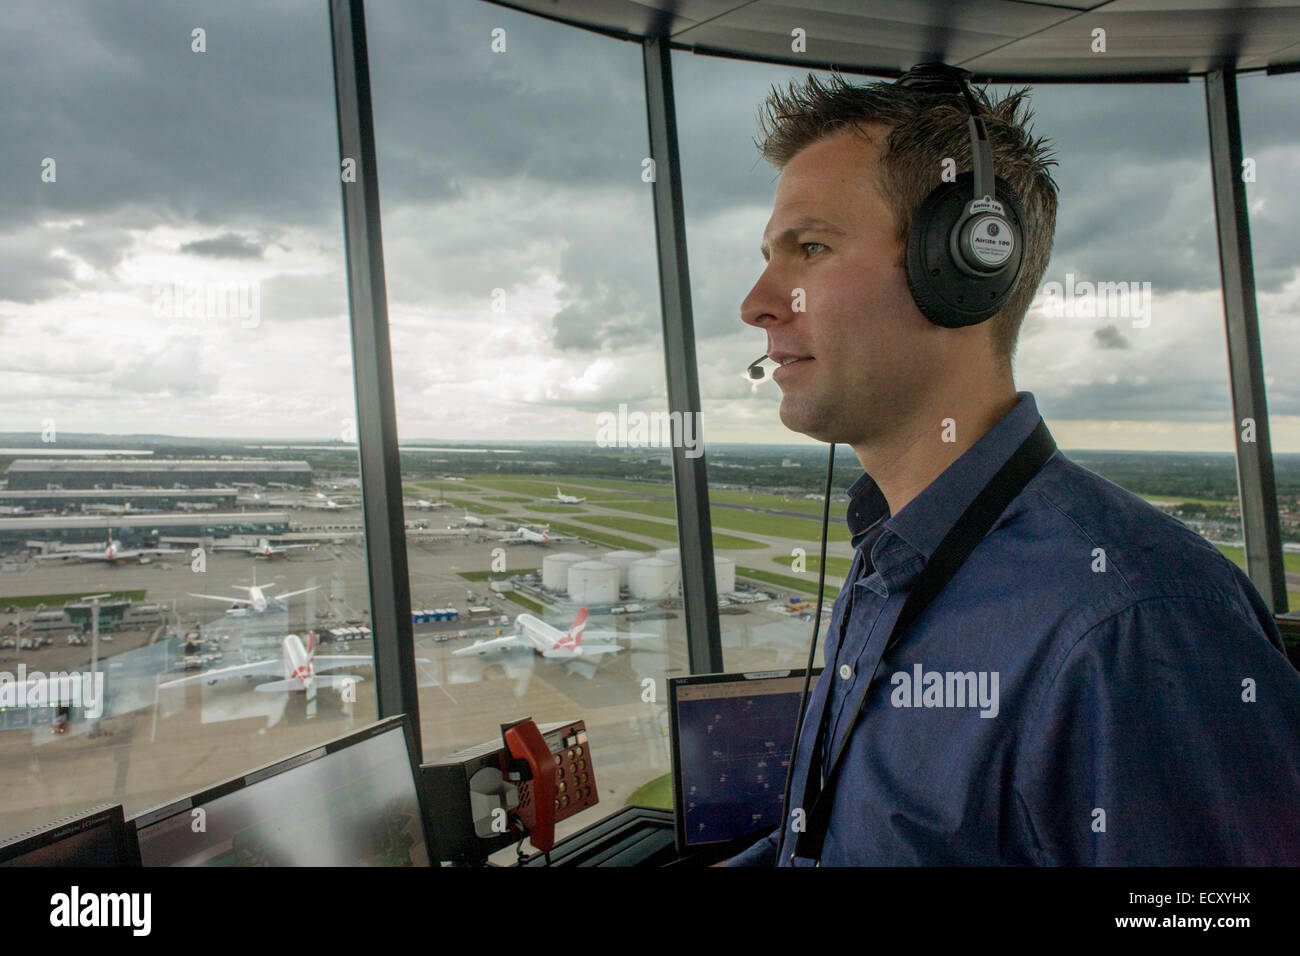 Contrôleur aérien Heathrow NATS en tour de contrôle à l'aéroport de Heathrow, Londres. Banque D'Images